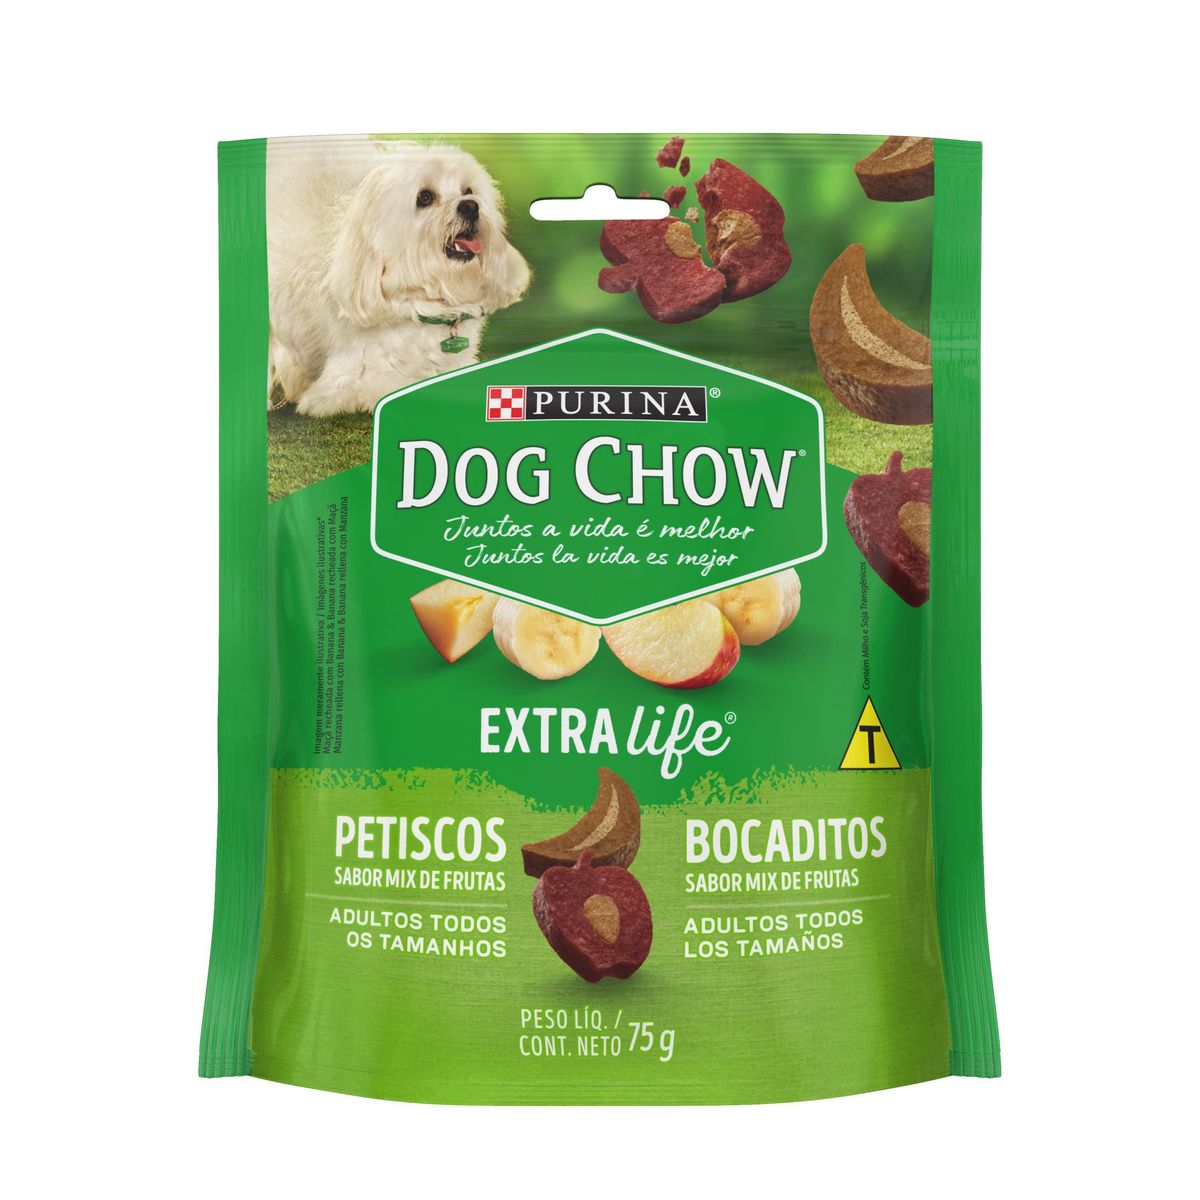 Petisco Dog Chow Cães Adultos Mix de Frutas 75g